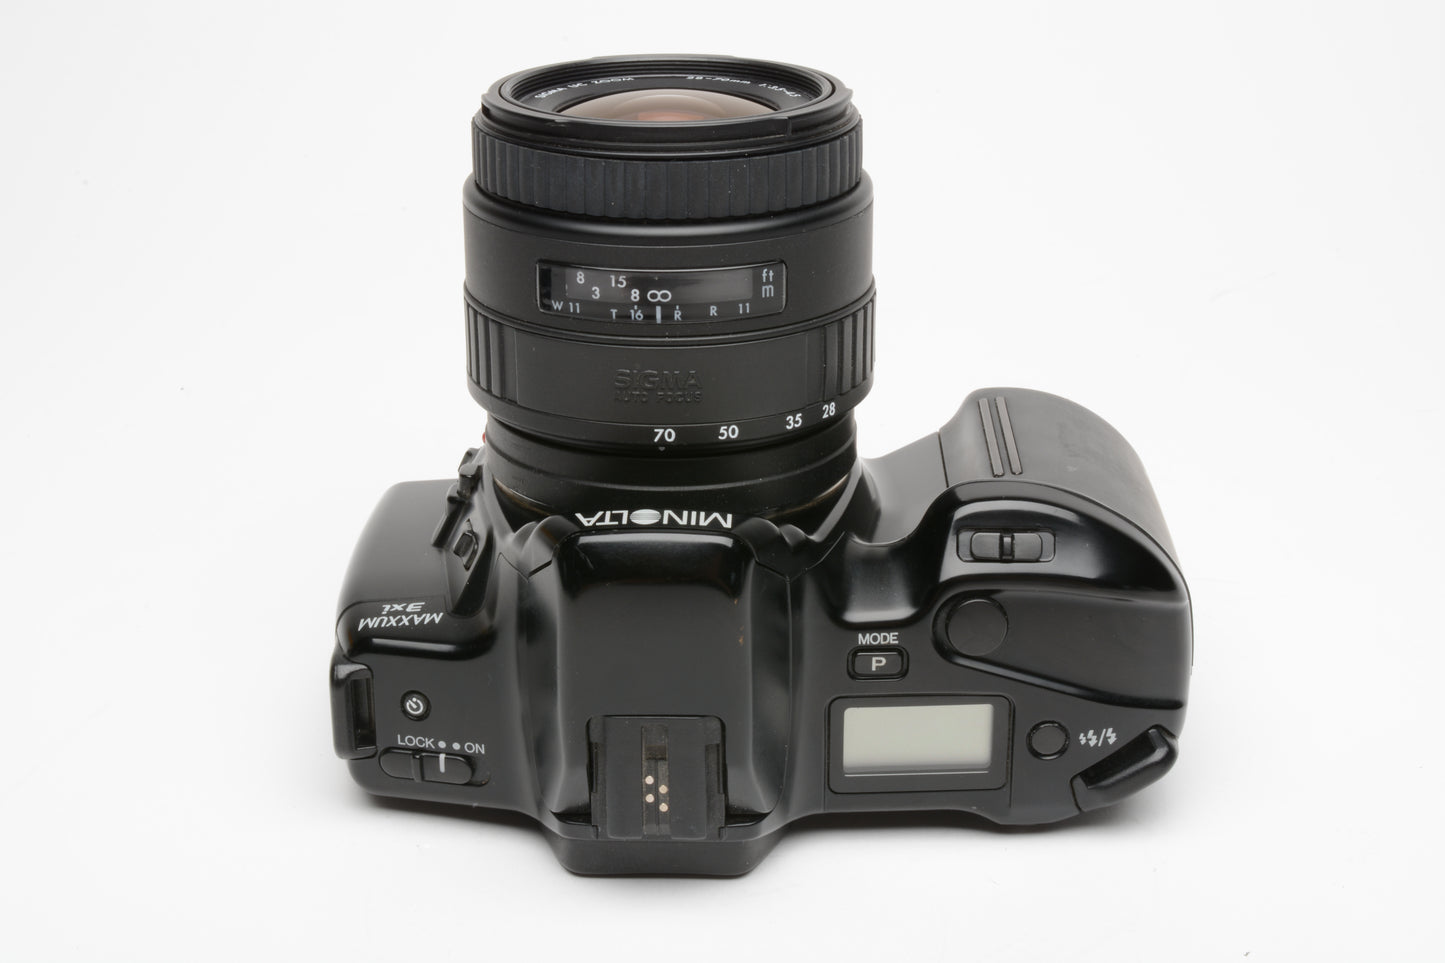 Minolta Maxxum 3xi 35mm SLR w/AF 28-70mm f3.5-4.5 zoom, UV, strap, tested